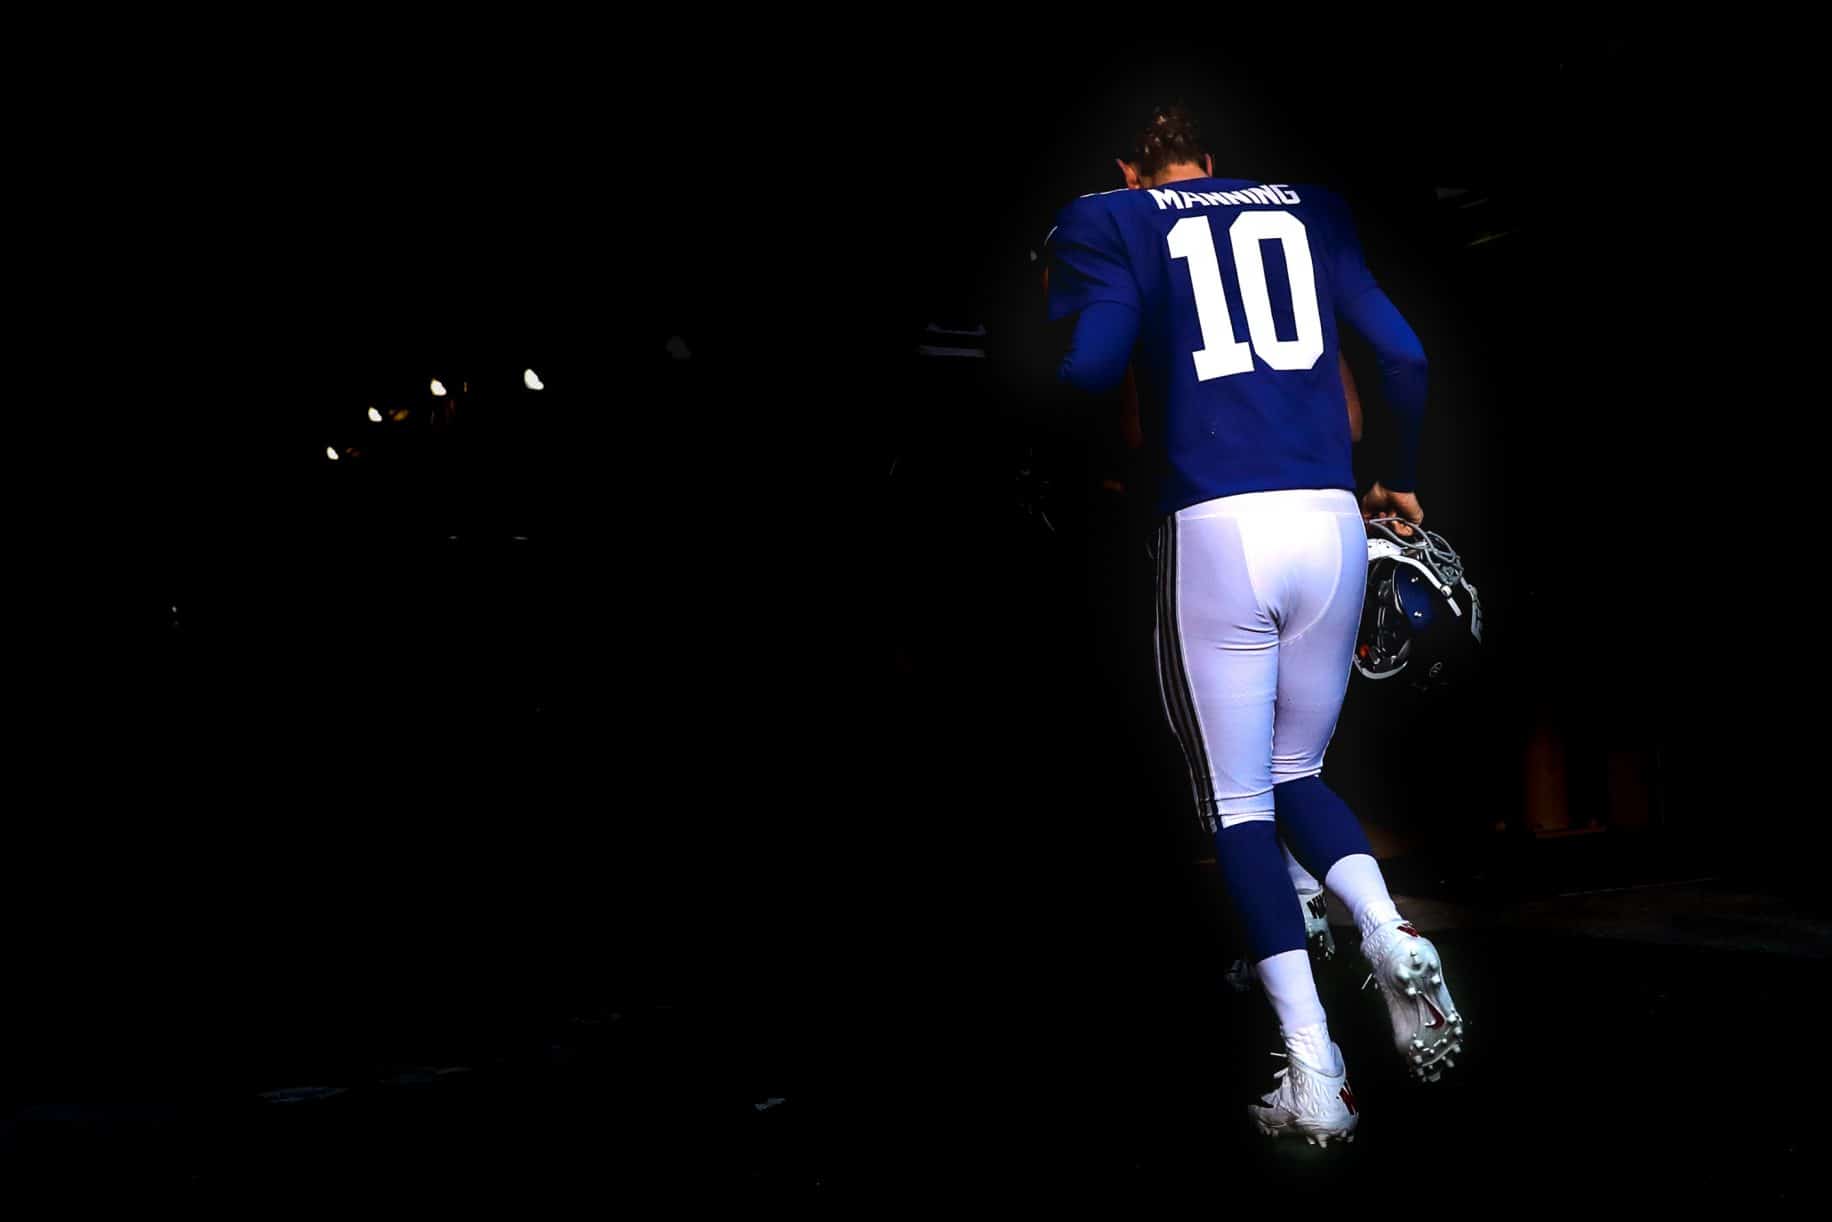 Eli Manning, New York Giants, NFL